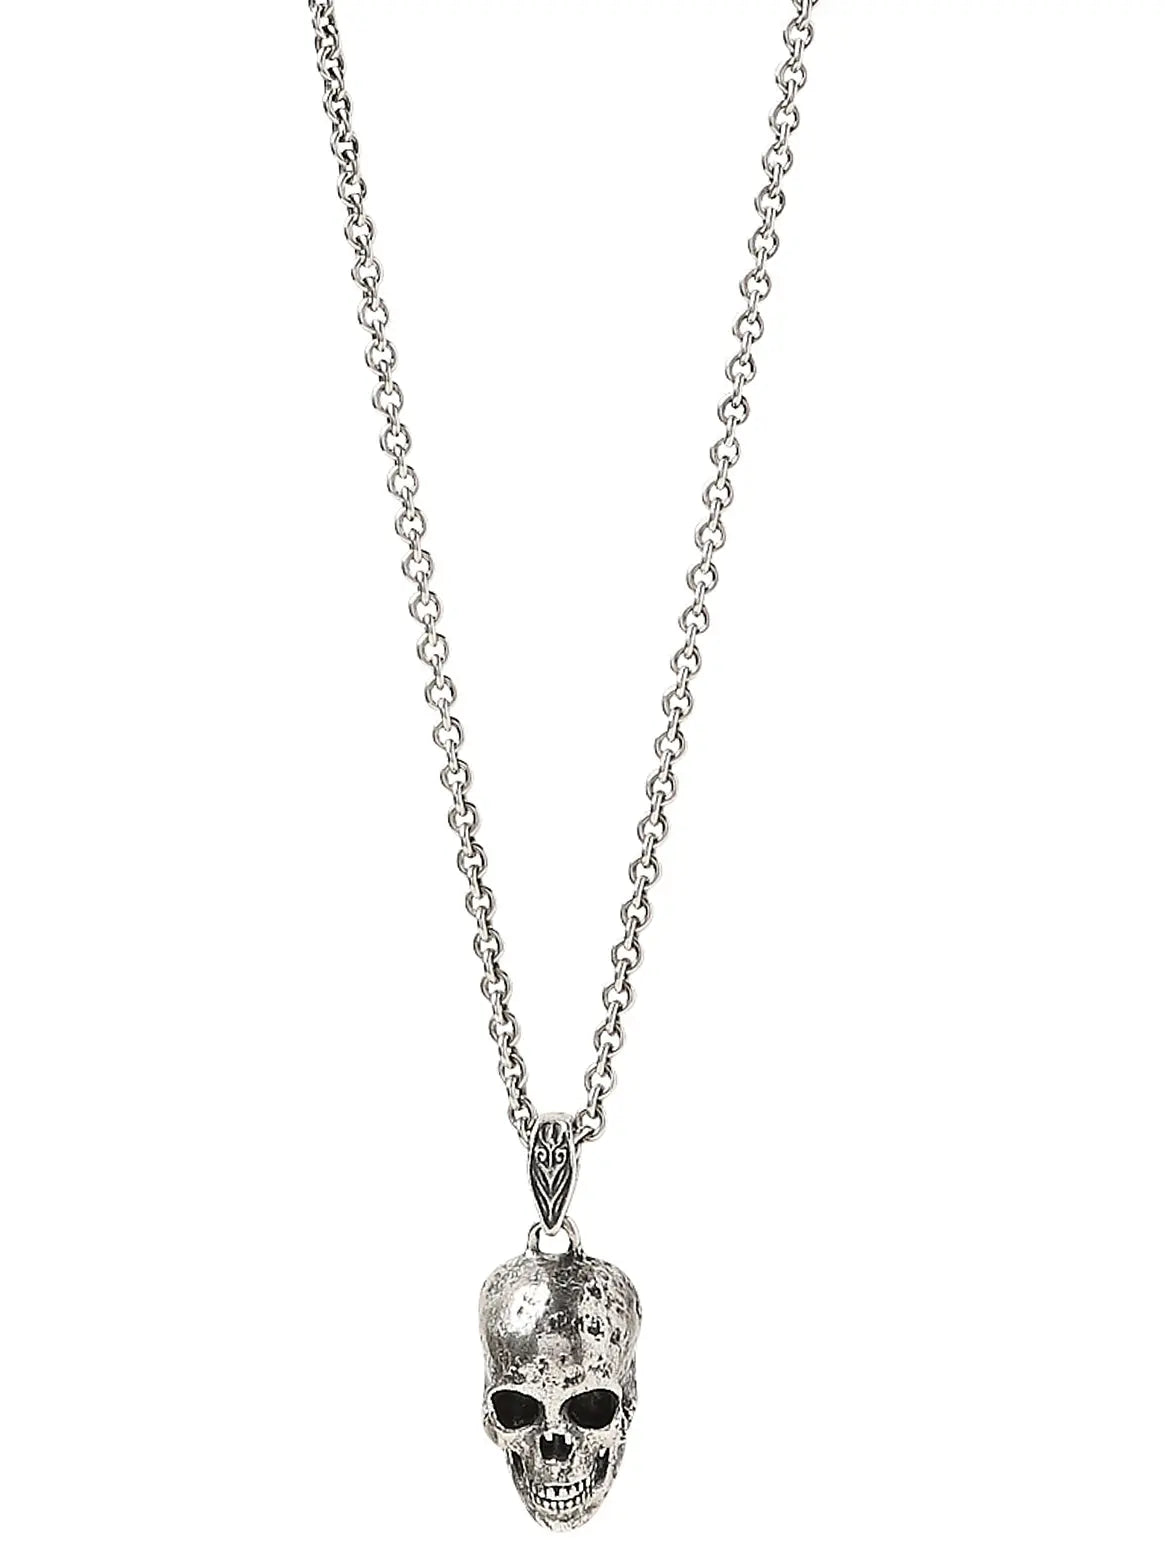 Skull Sterling Silver Skull Pendant Necklace - Squash Blossom Vail